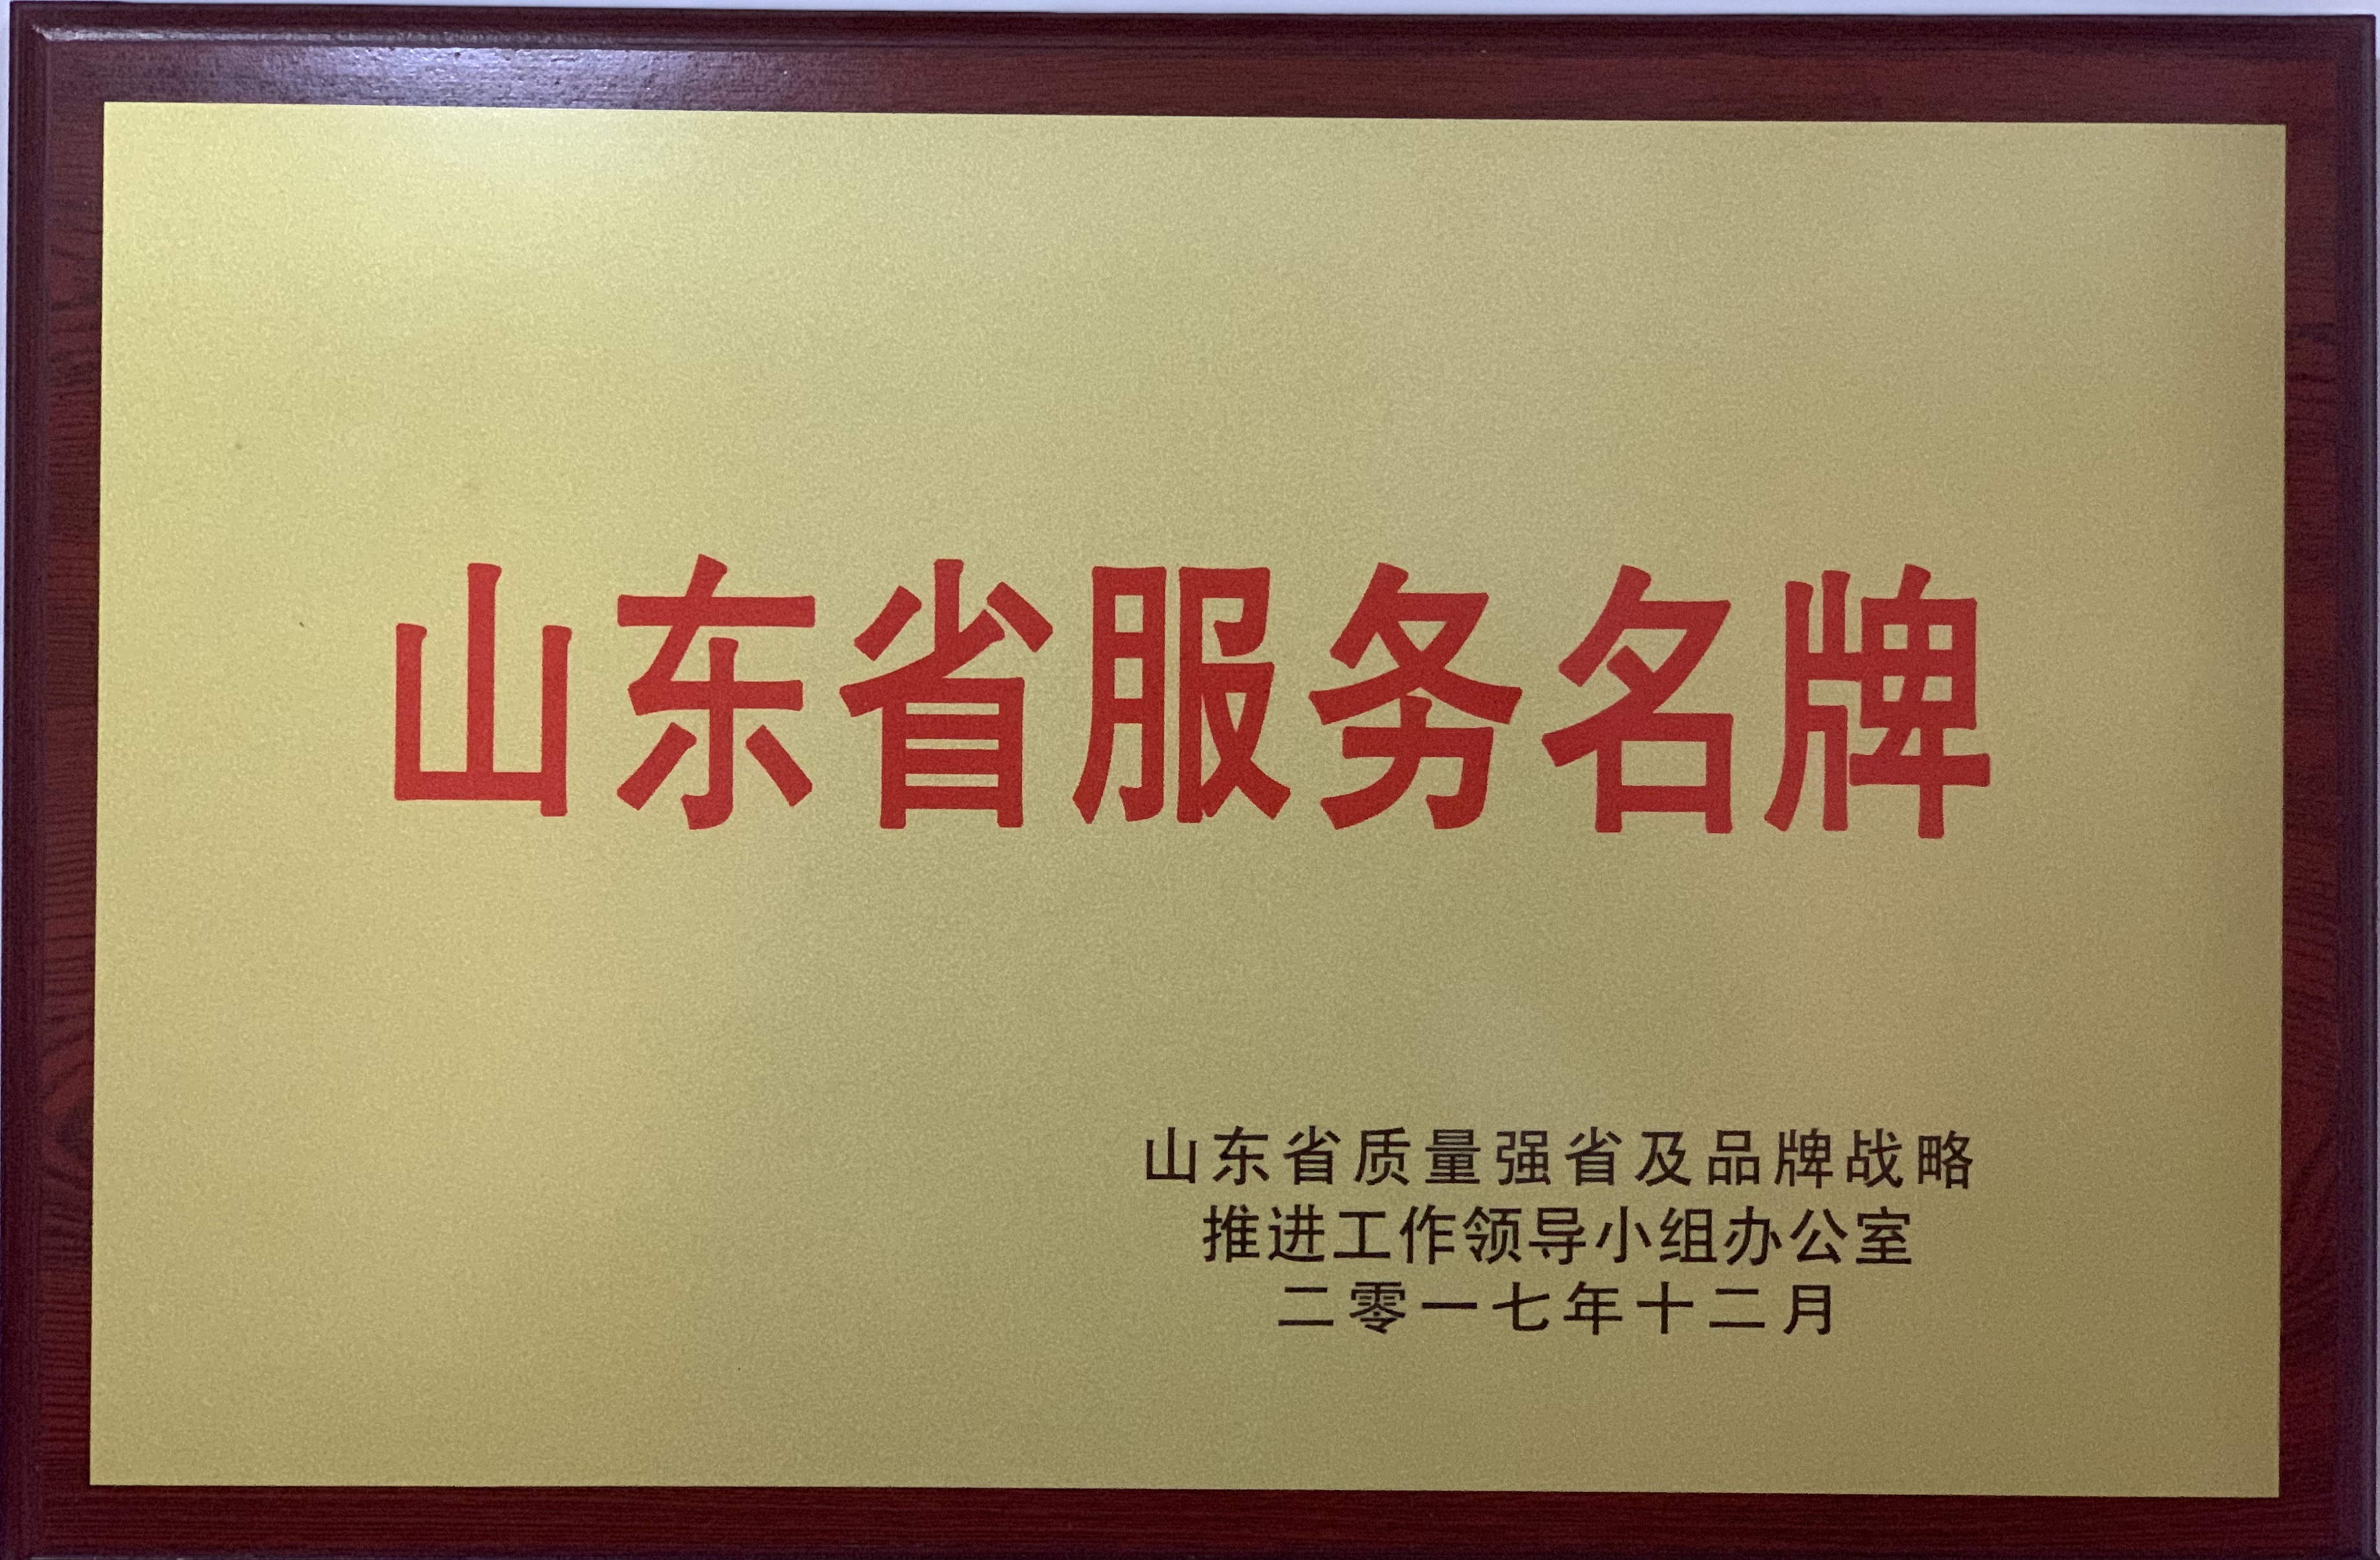 濟寧四和供熱有限公司榮獲2017年度山東省服務名牌